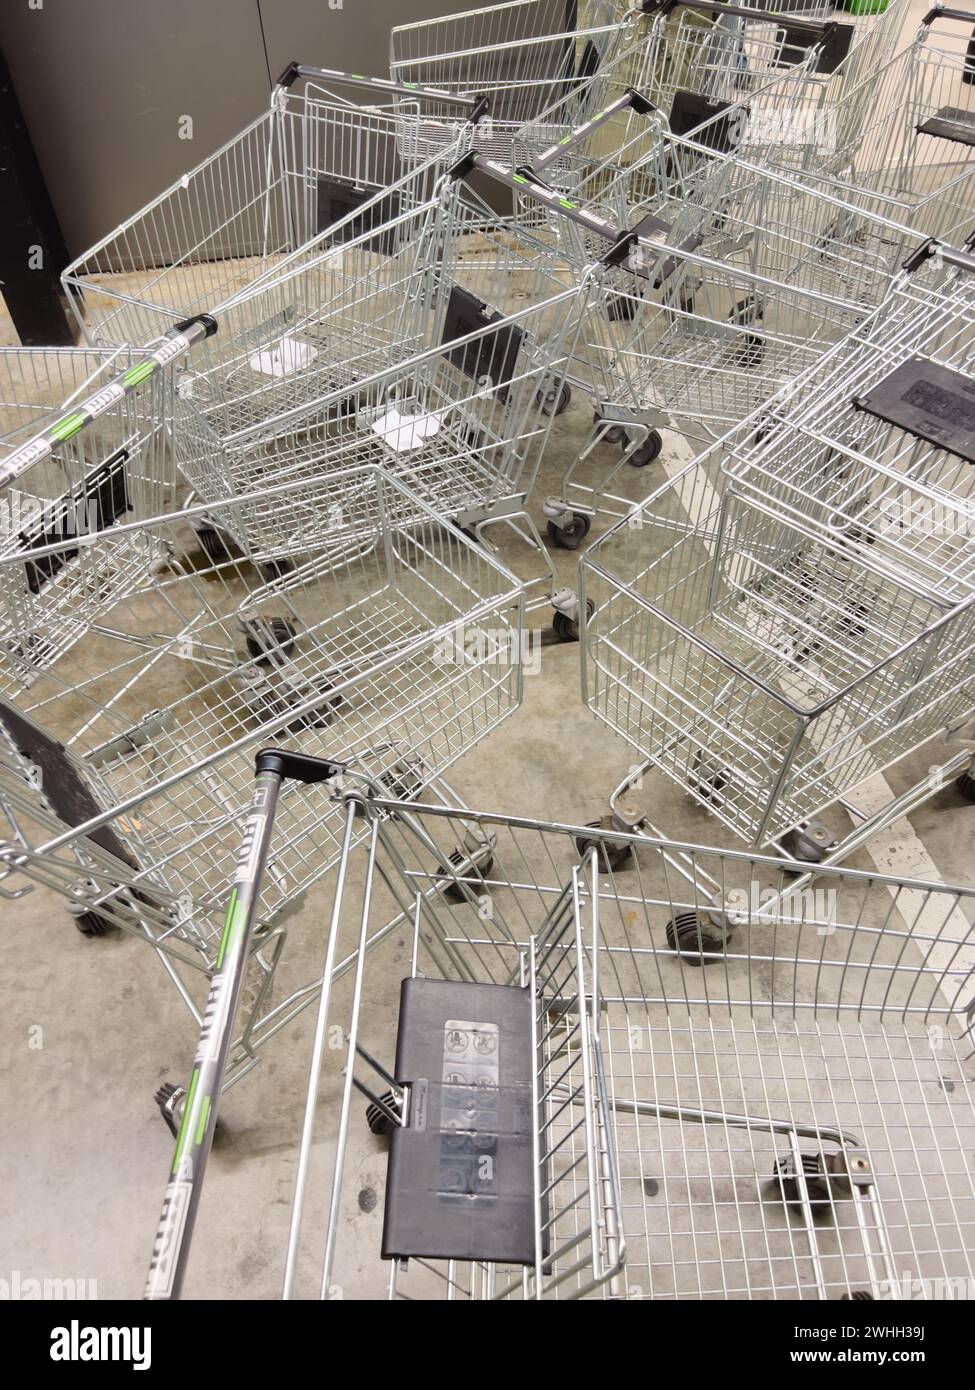 Supermarkt-Wagen stehen in Unordnung auf dem Ladenboden Stockfoto